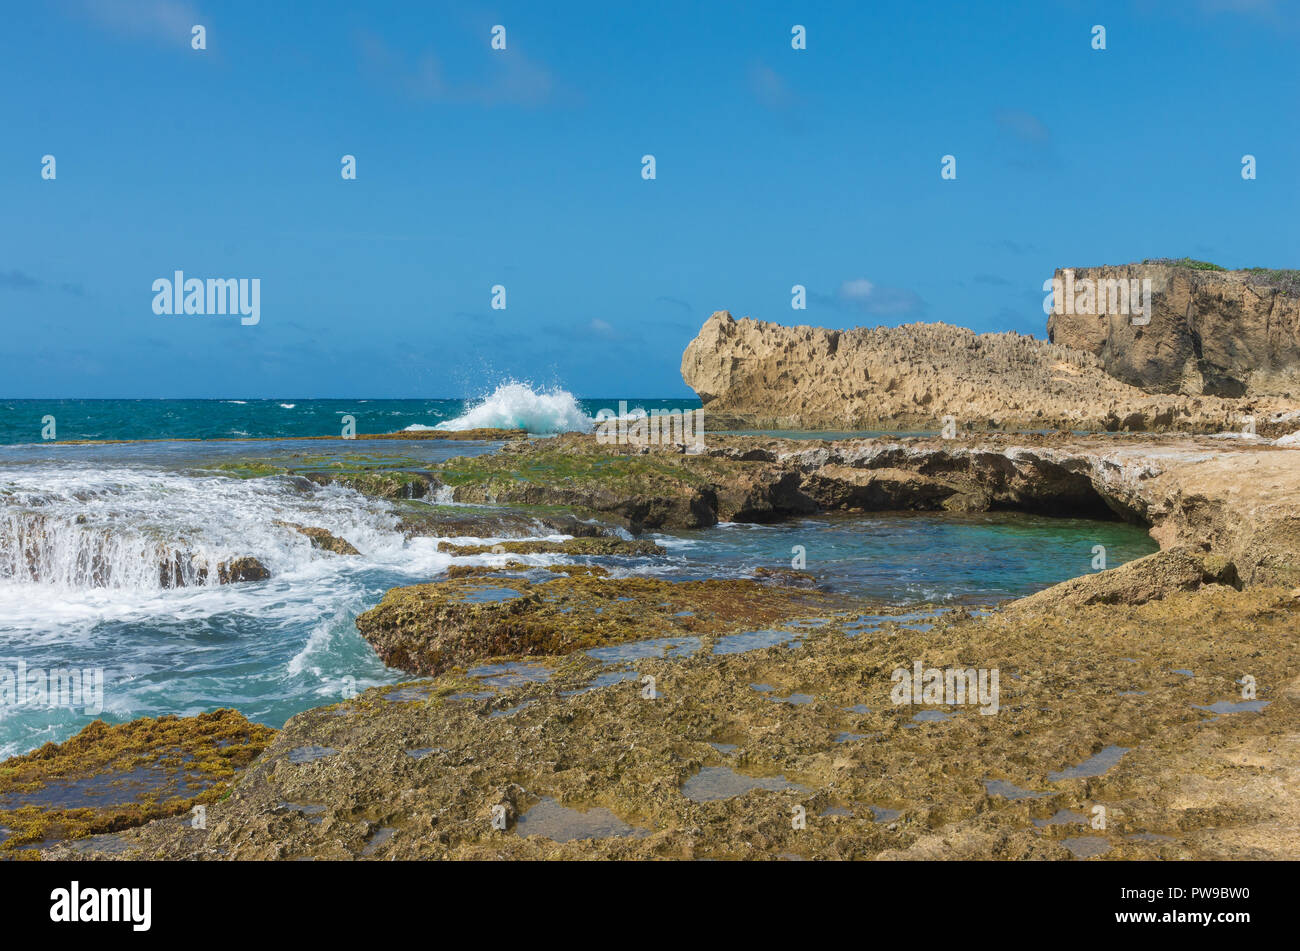 seascape of punta las tunas at cueva del indio along puerto rico’s north coast Stock Photo